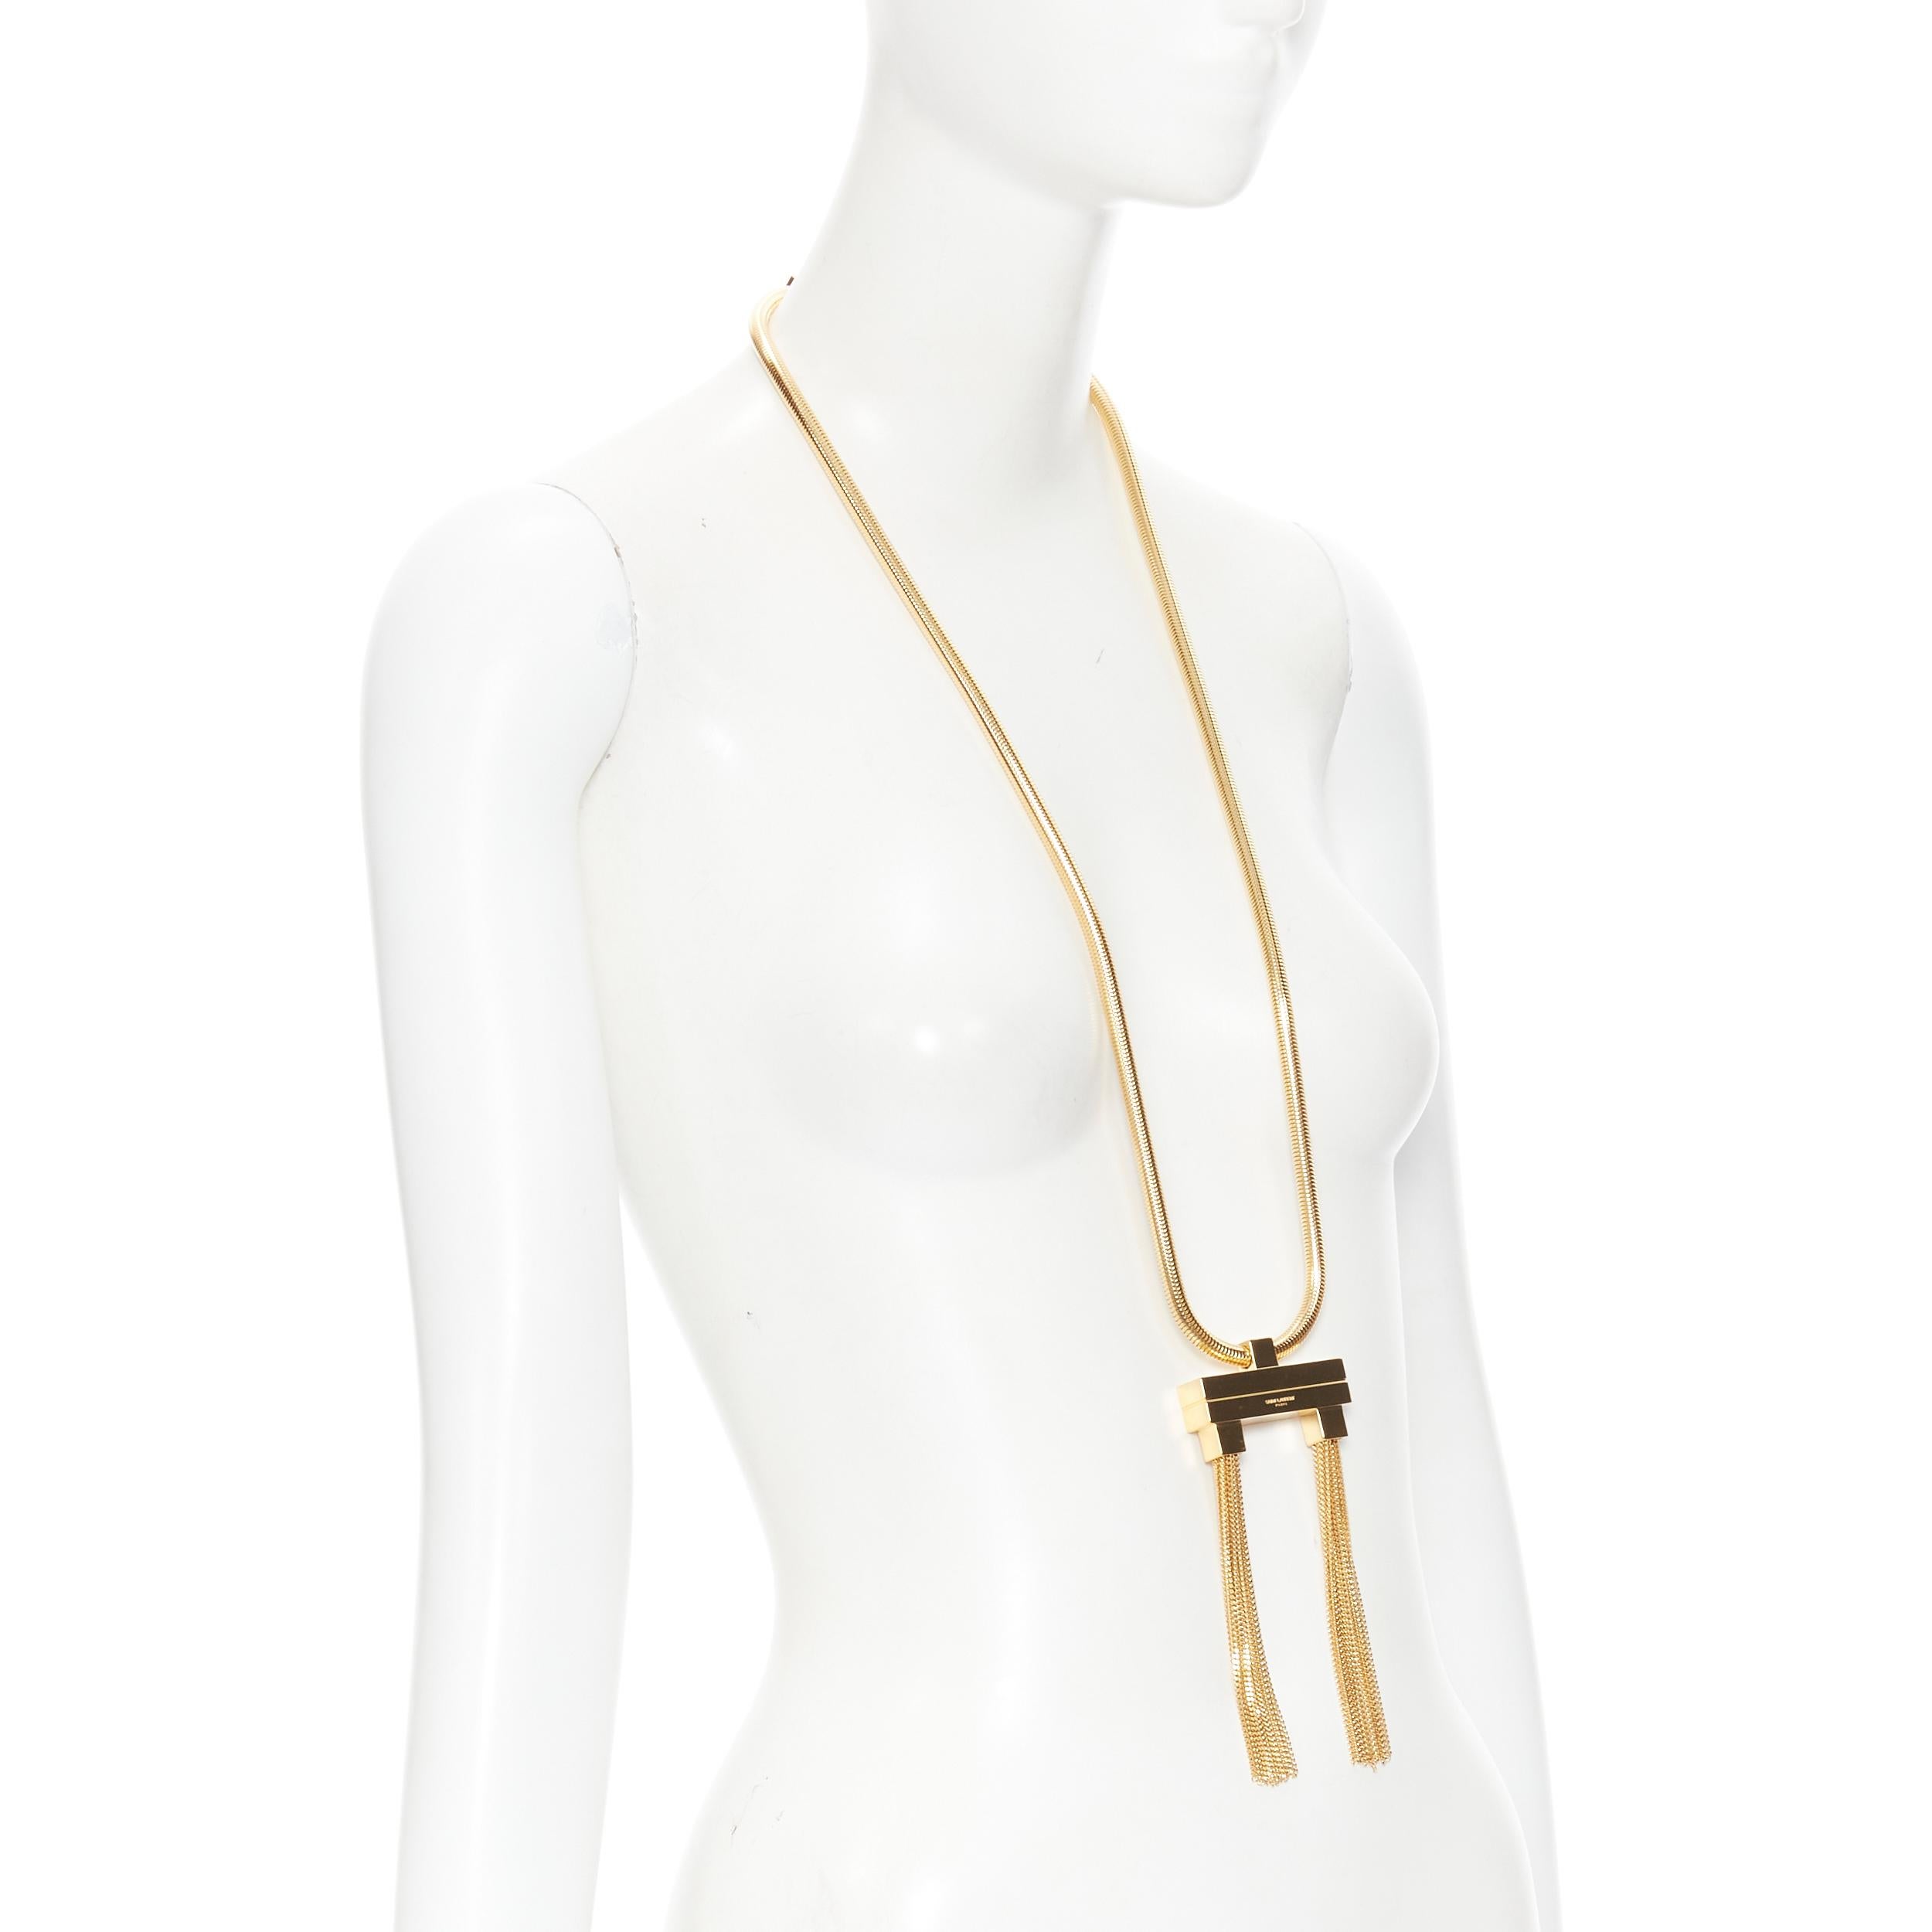 Gray new SAINT LAURENT Hedi Slimane 2013 Runway Opium gold double tassel necklace